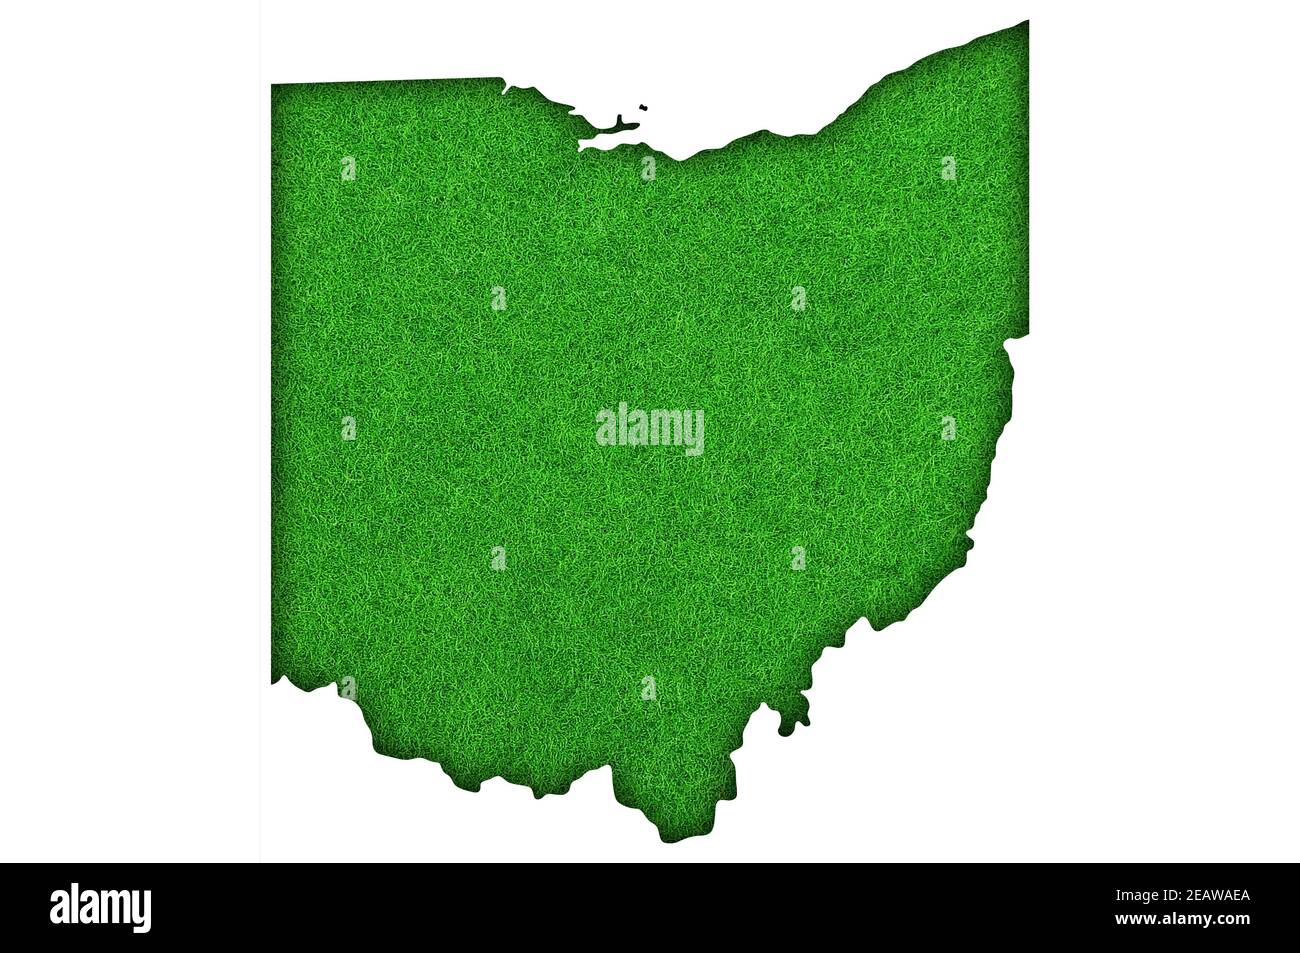 Mappa dell'Ohio su feltro verde Foto Stock